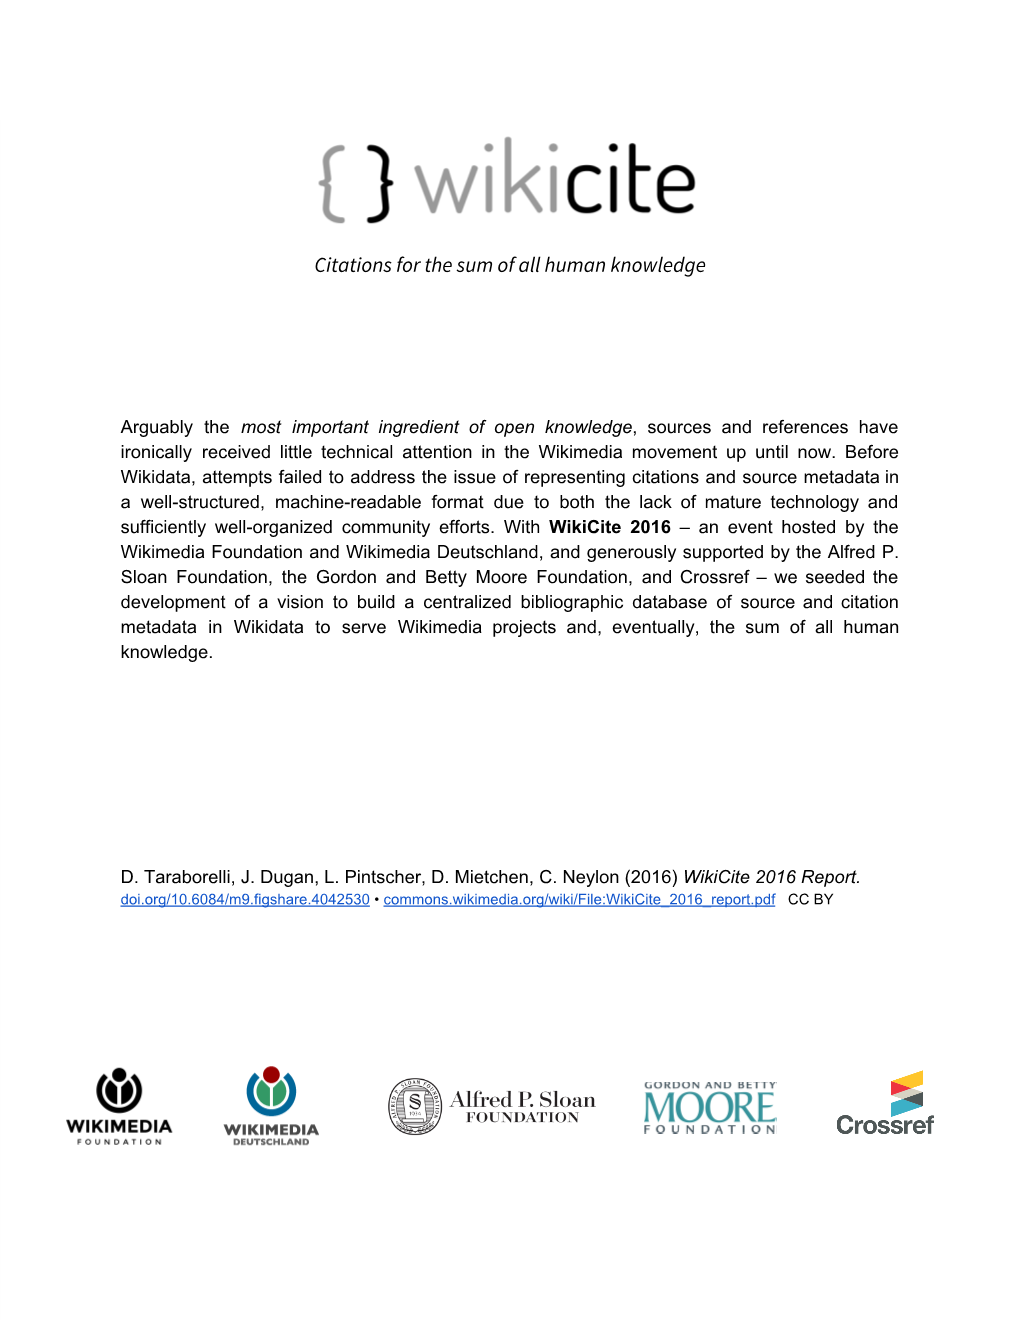 Wikicite 2016 Report